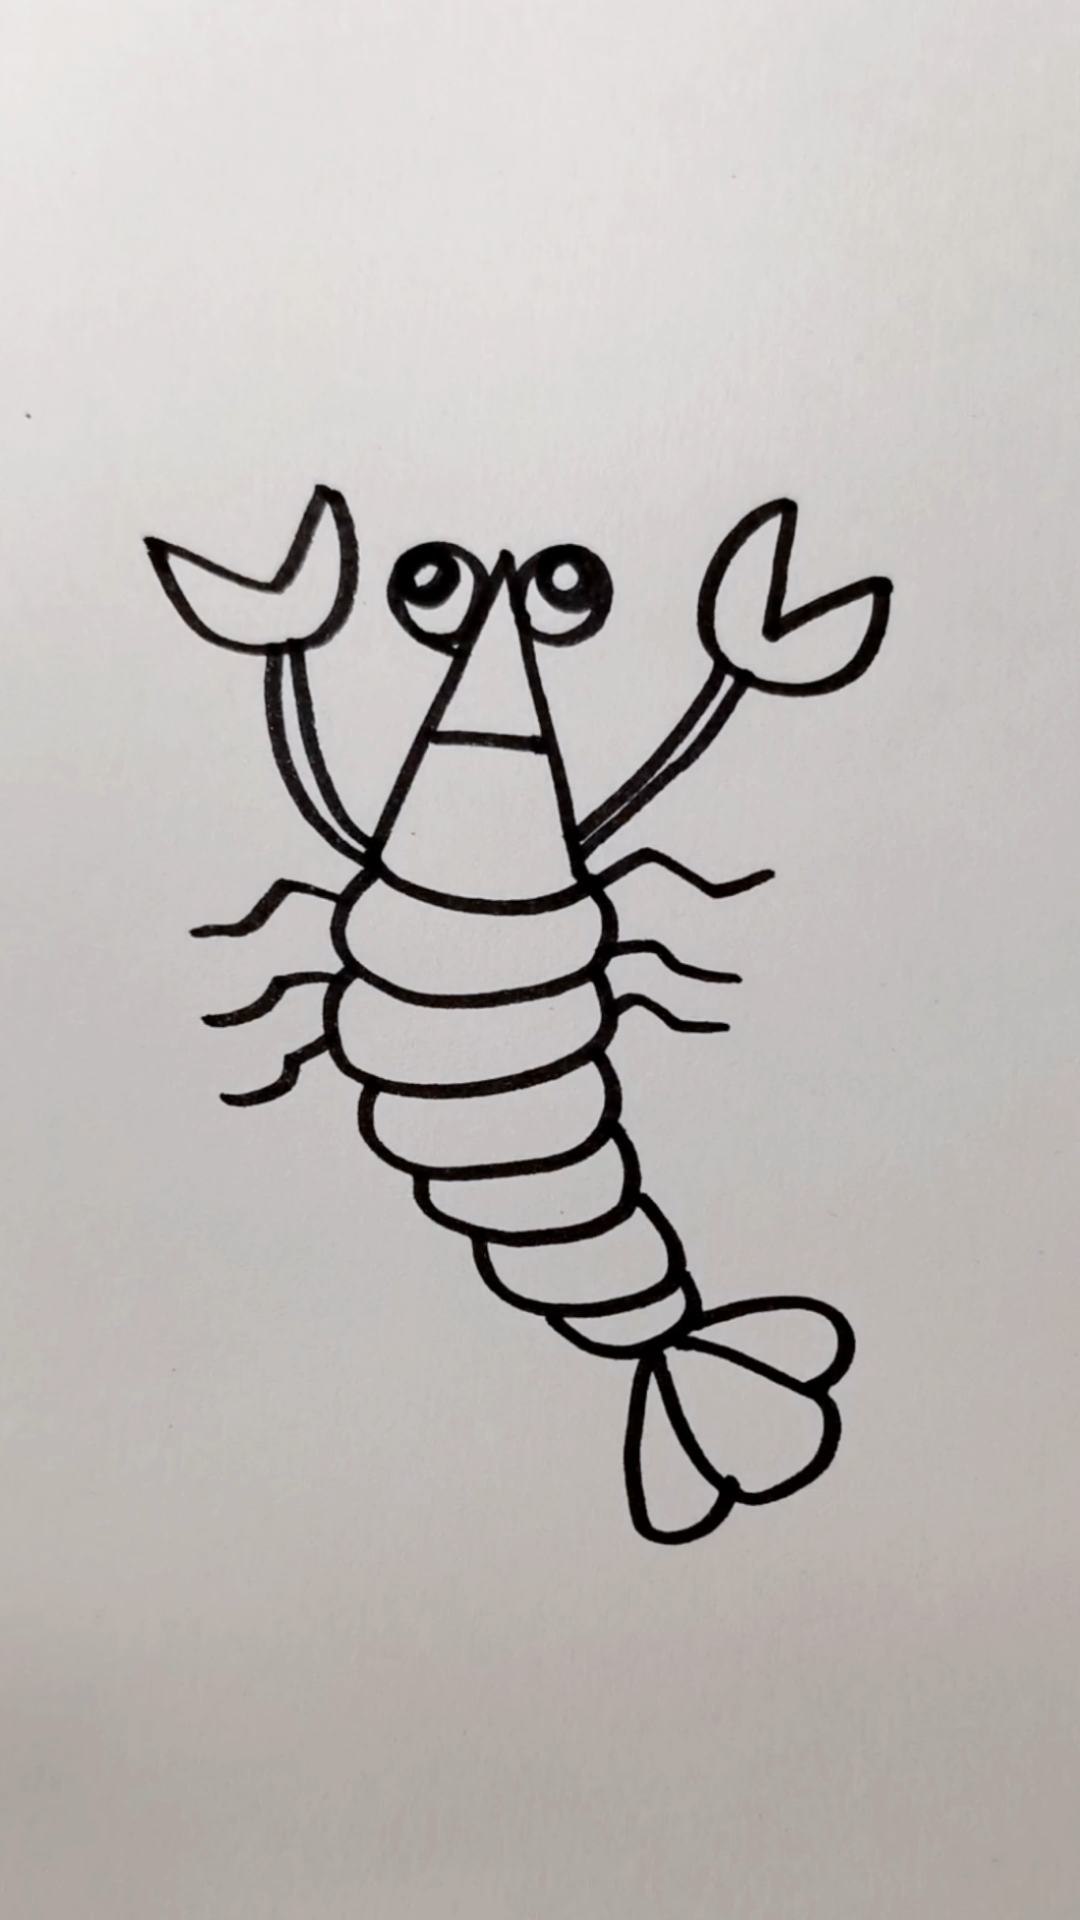 大龙虾的画法图片